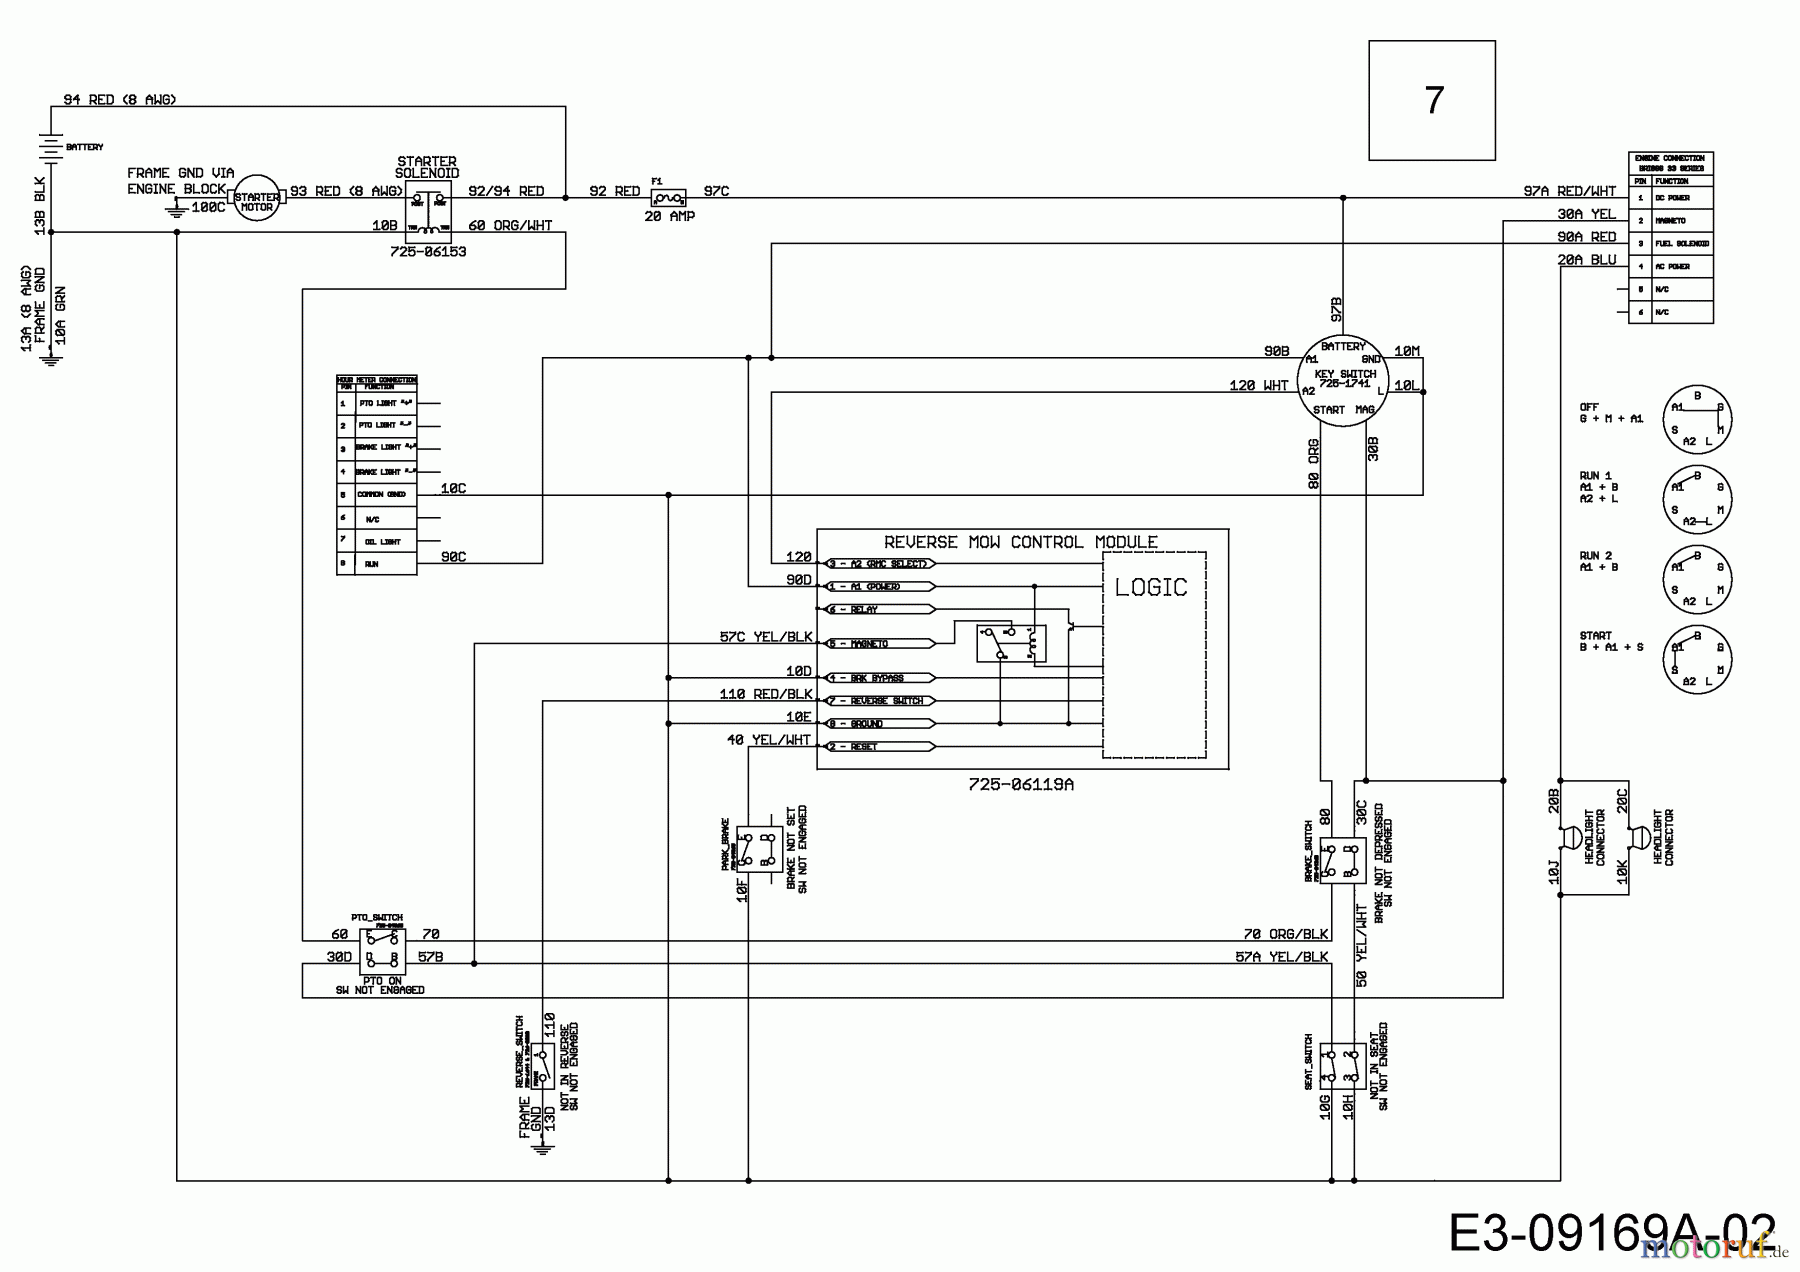  MTD Lawn tractors 17/42 13AV765S306  (2015) Wiring diagram